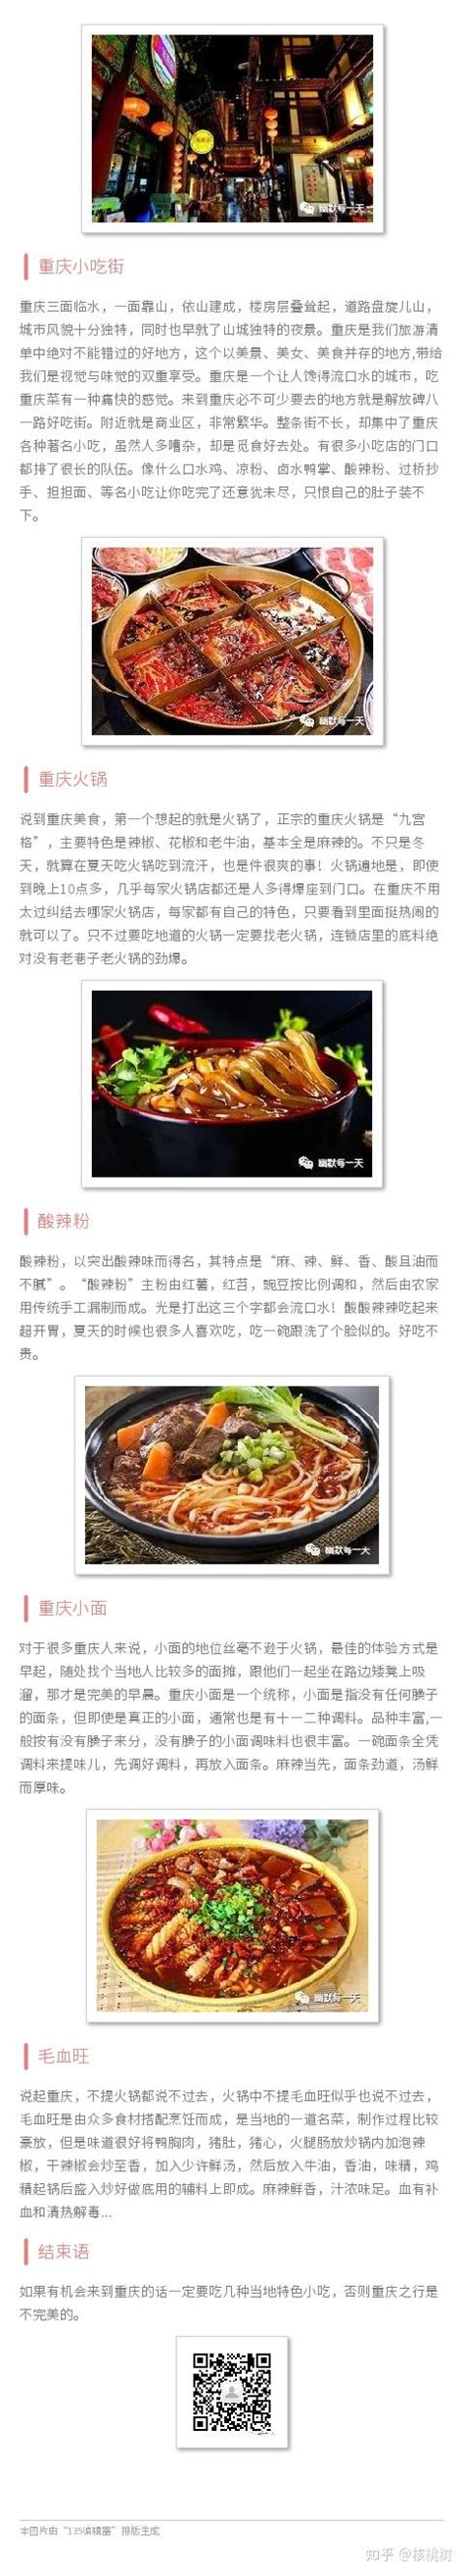 重庆旅游必吃的美食店「重庆高新区南方花园西蜀人家-星疾